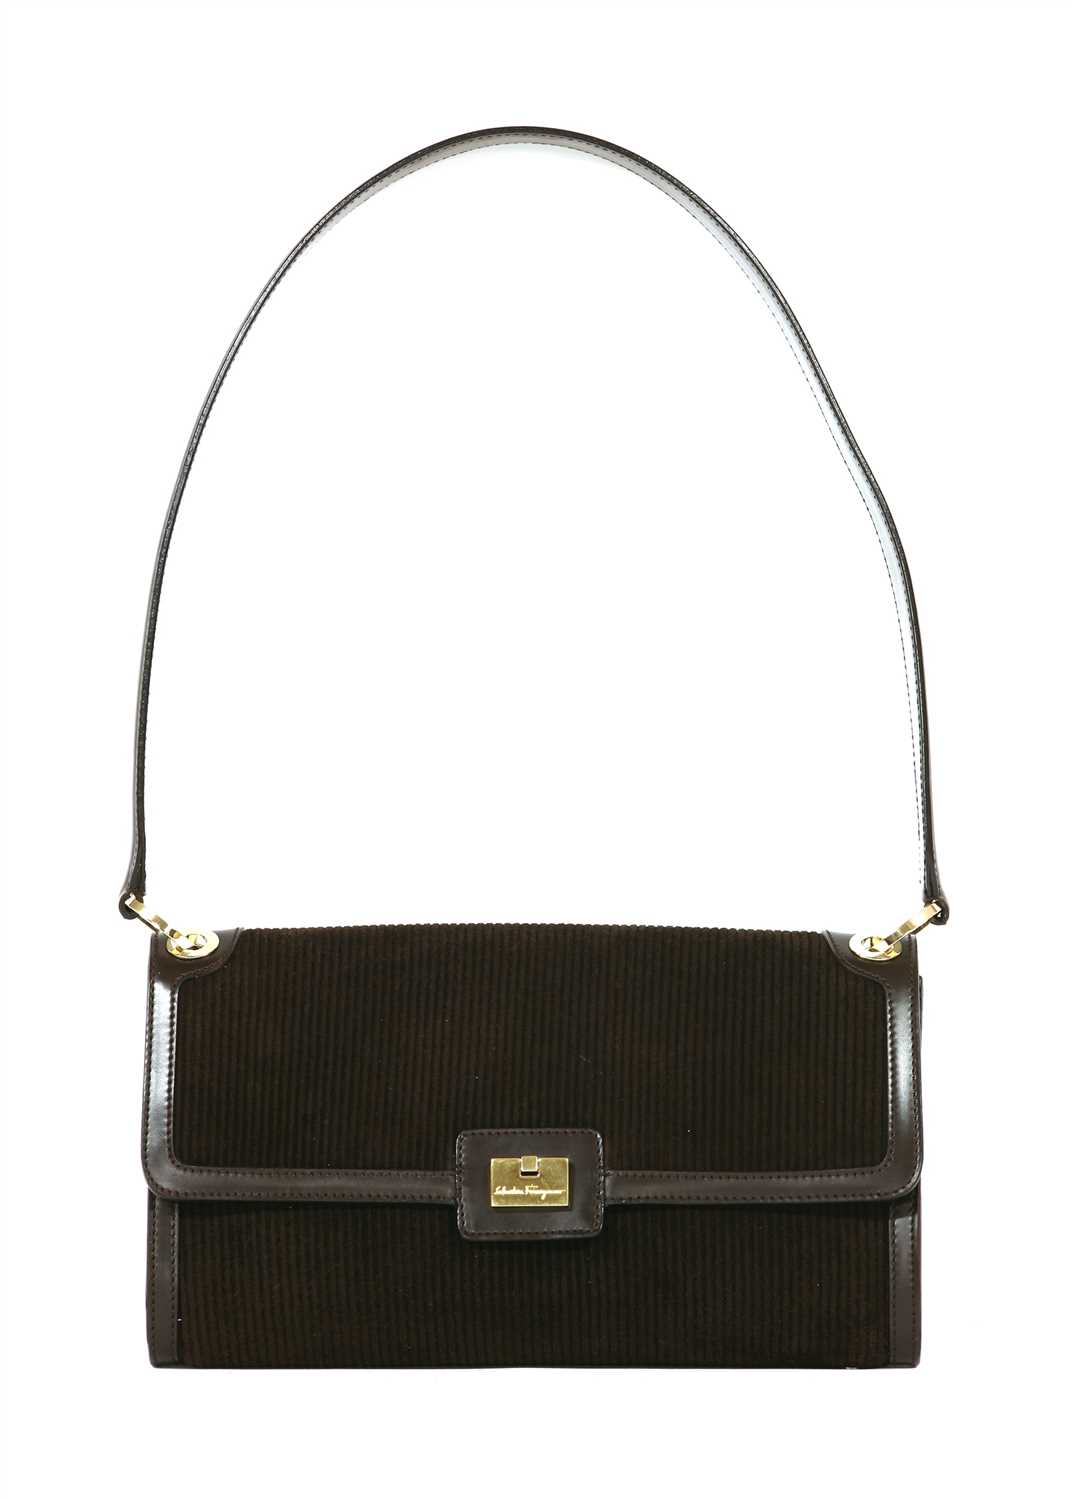 Lot 203 - A Salvatore Ferragamo brown suede leather shoulder handbag